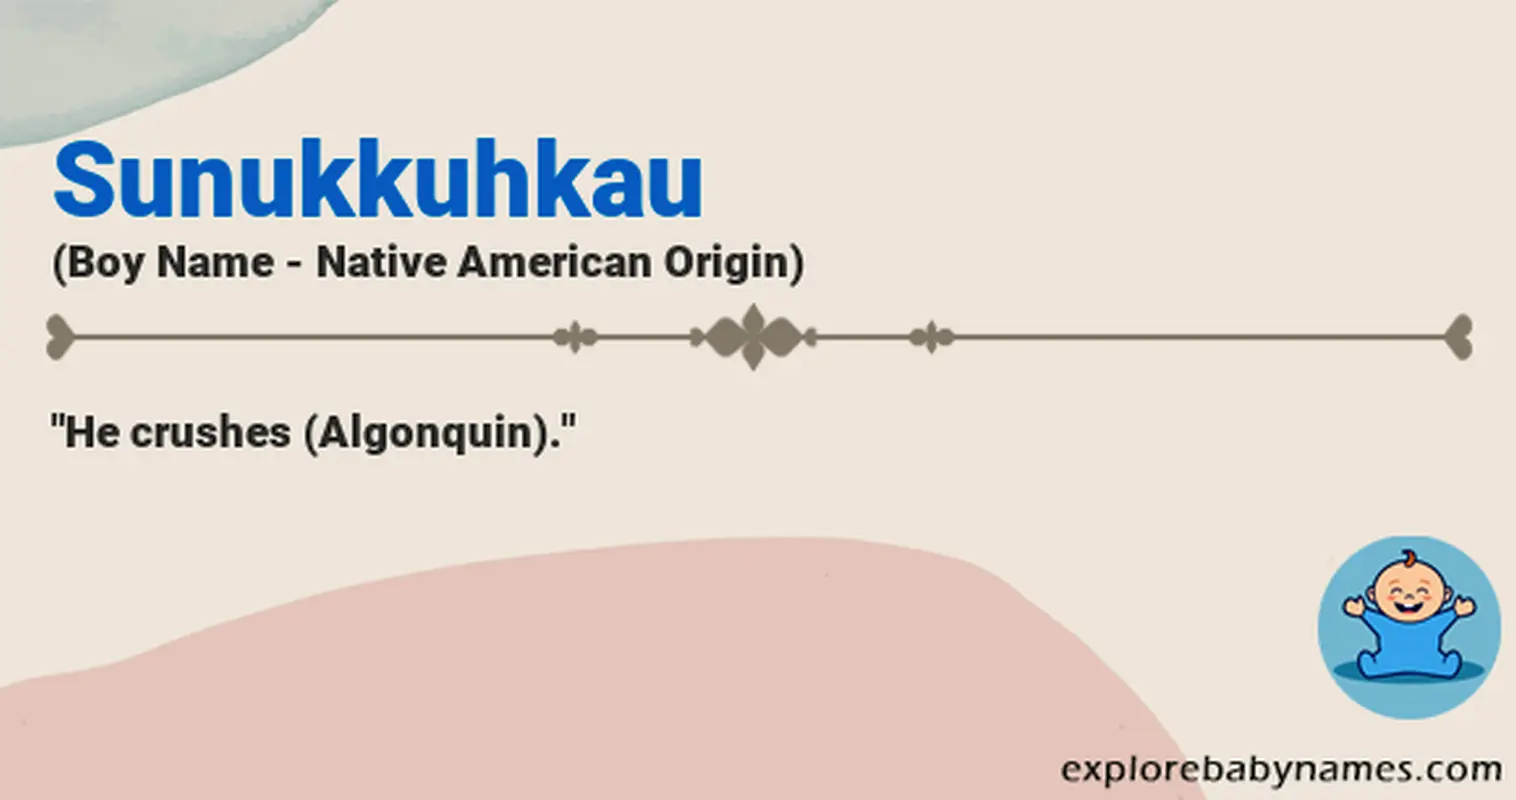 Meaning of Sunukkuhkau